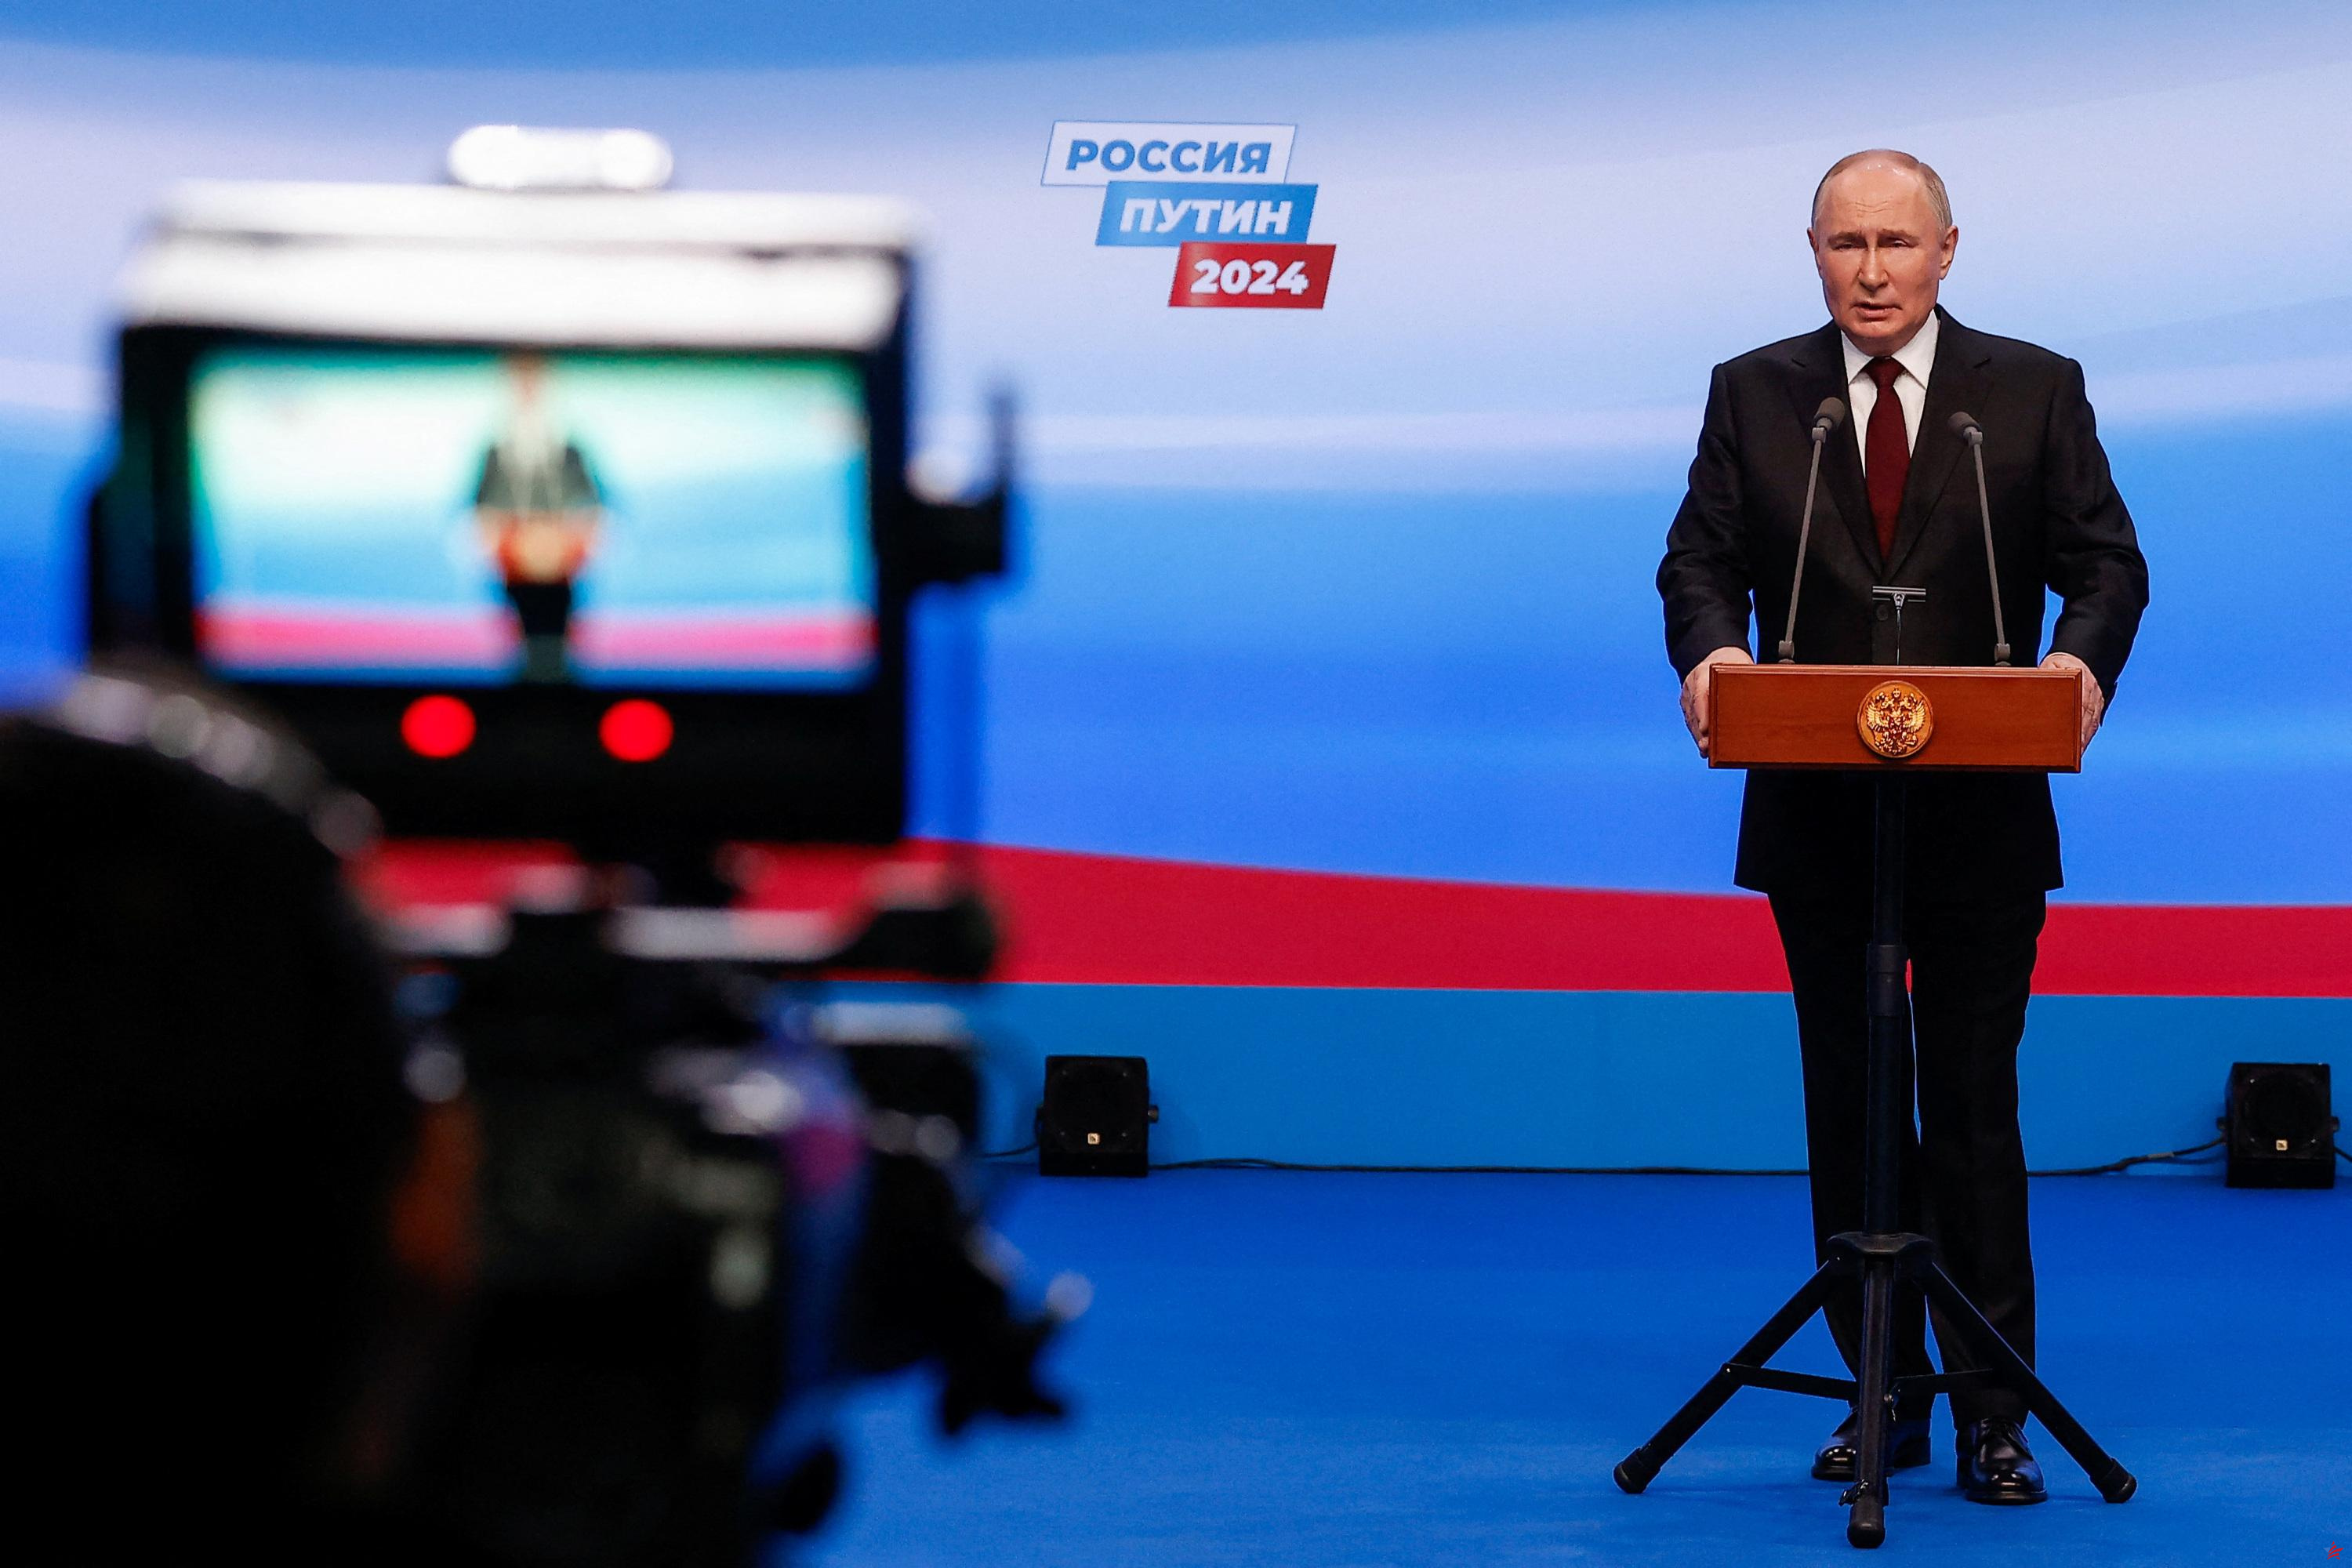 “Triunfo corrupto”, “elección ridícula”, “farsa”: la prensa occidental se burla de la reelección de Vladimir Putin